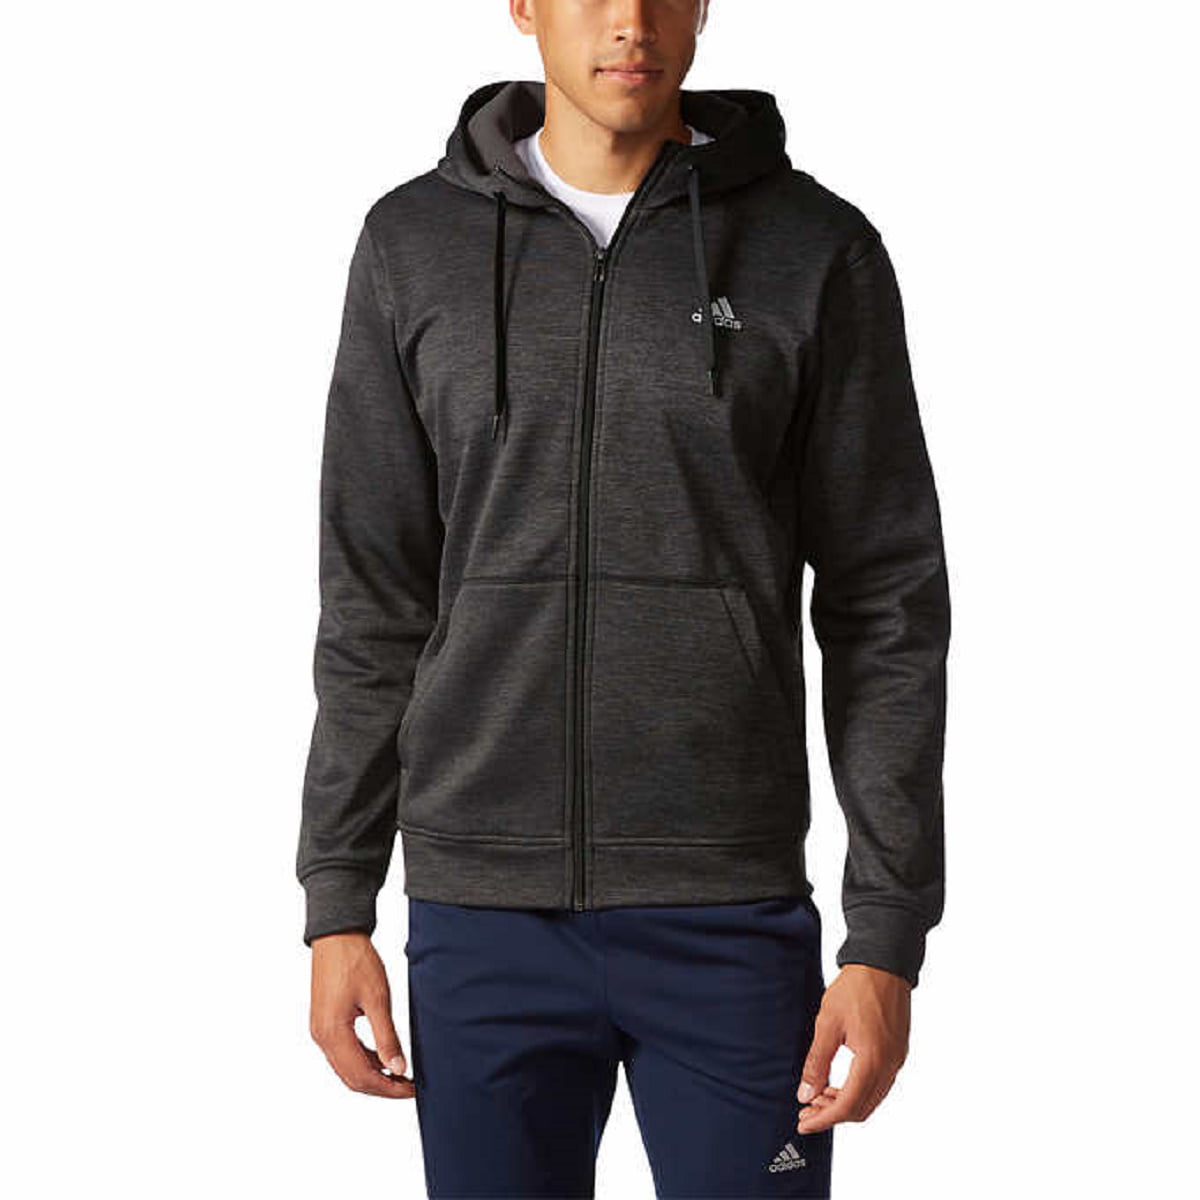 Adskille Indbildsk Vær forsigtig Adidas Men's Climawarm Tech Fleece Full Zip Performance Hooded Jacket  (Utility Black Heather, Medium) - Walmart.com